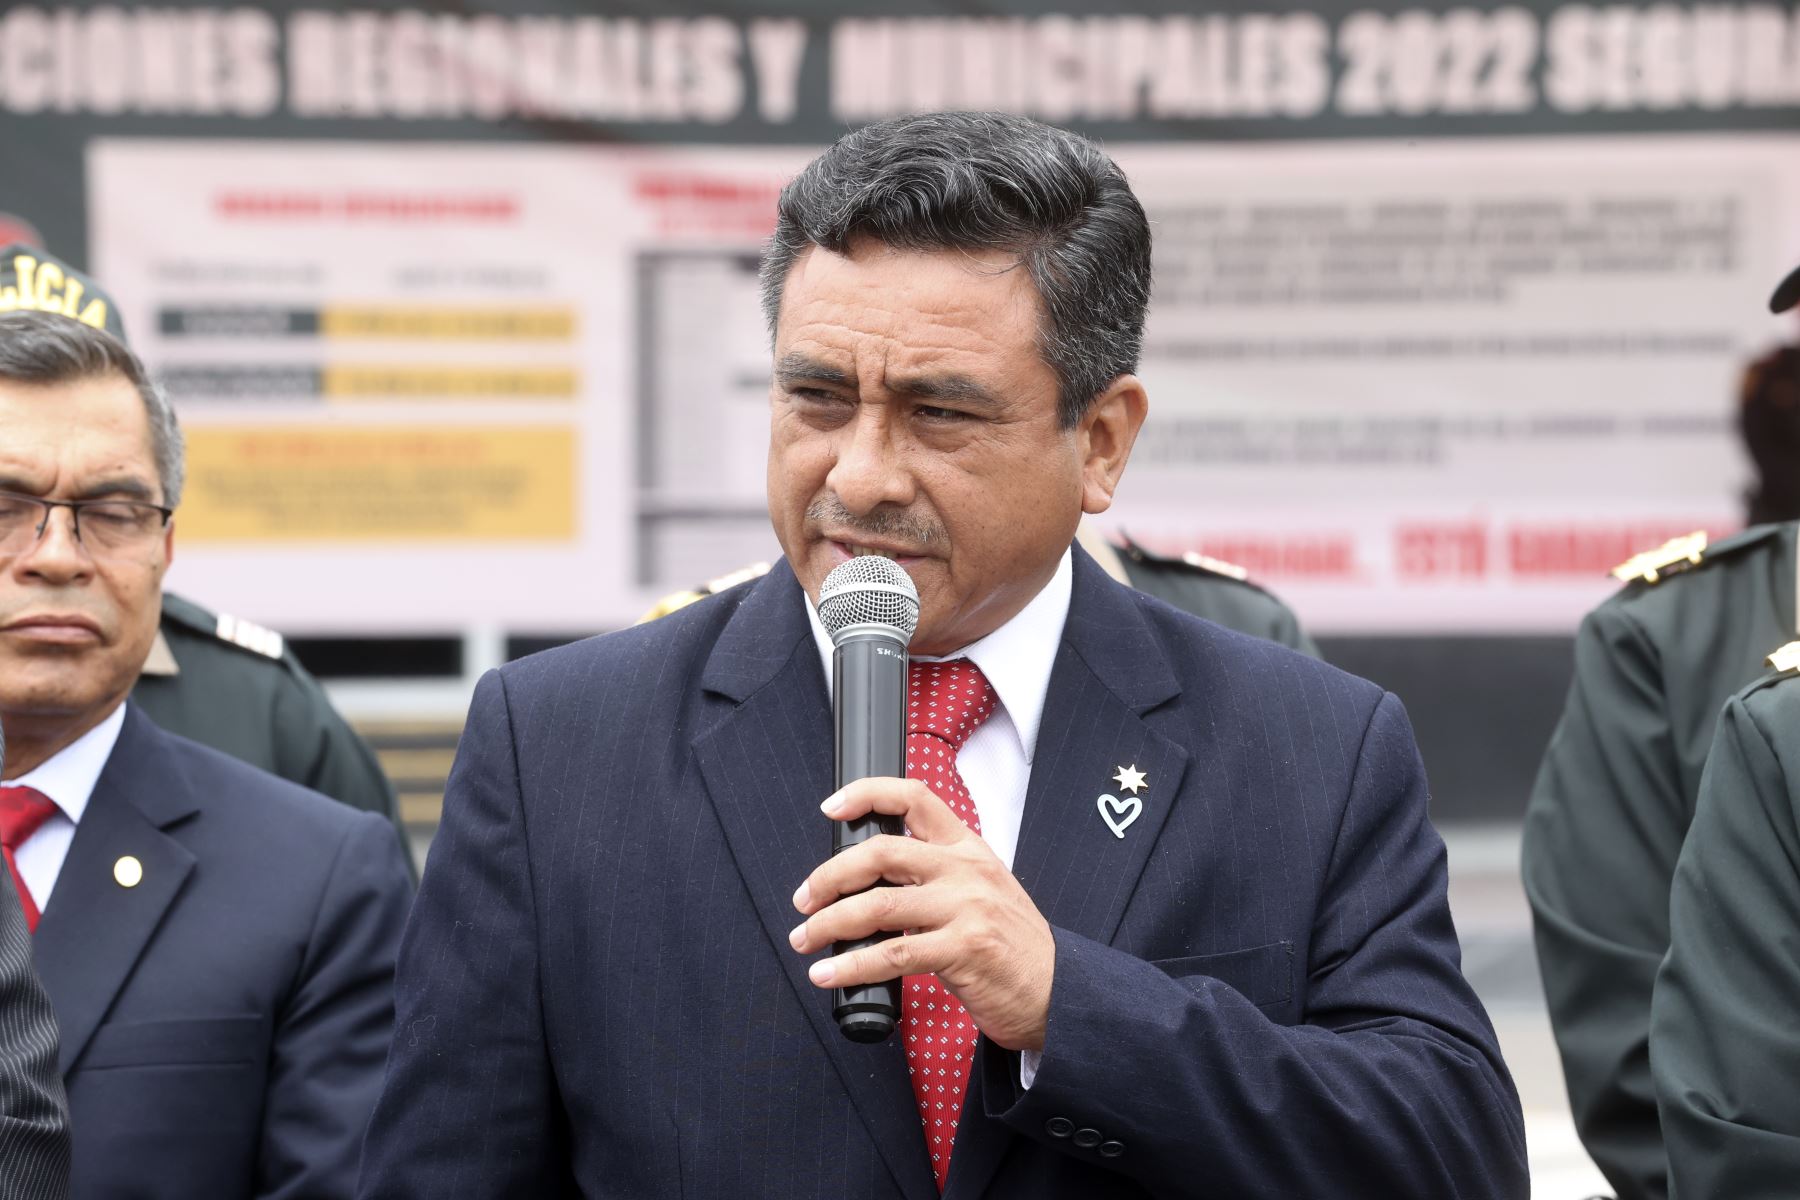 El ministro del Interior, Willy Huerta Olivas, encabezó la ceremonia de presentación del plan de operaciones “Elecciones Seguras 2022” que será liderado por la Policía Nacional del Perú.
Foto: ANDINA/Vidal Tarqui